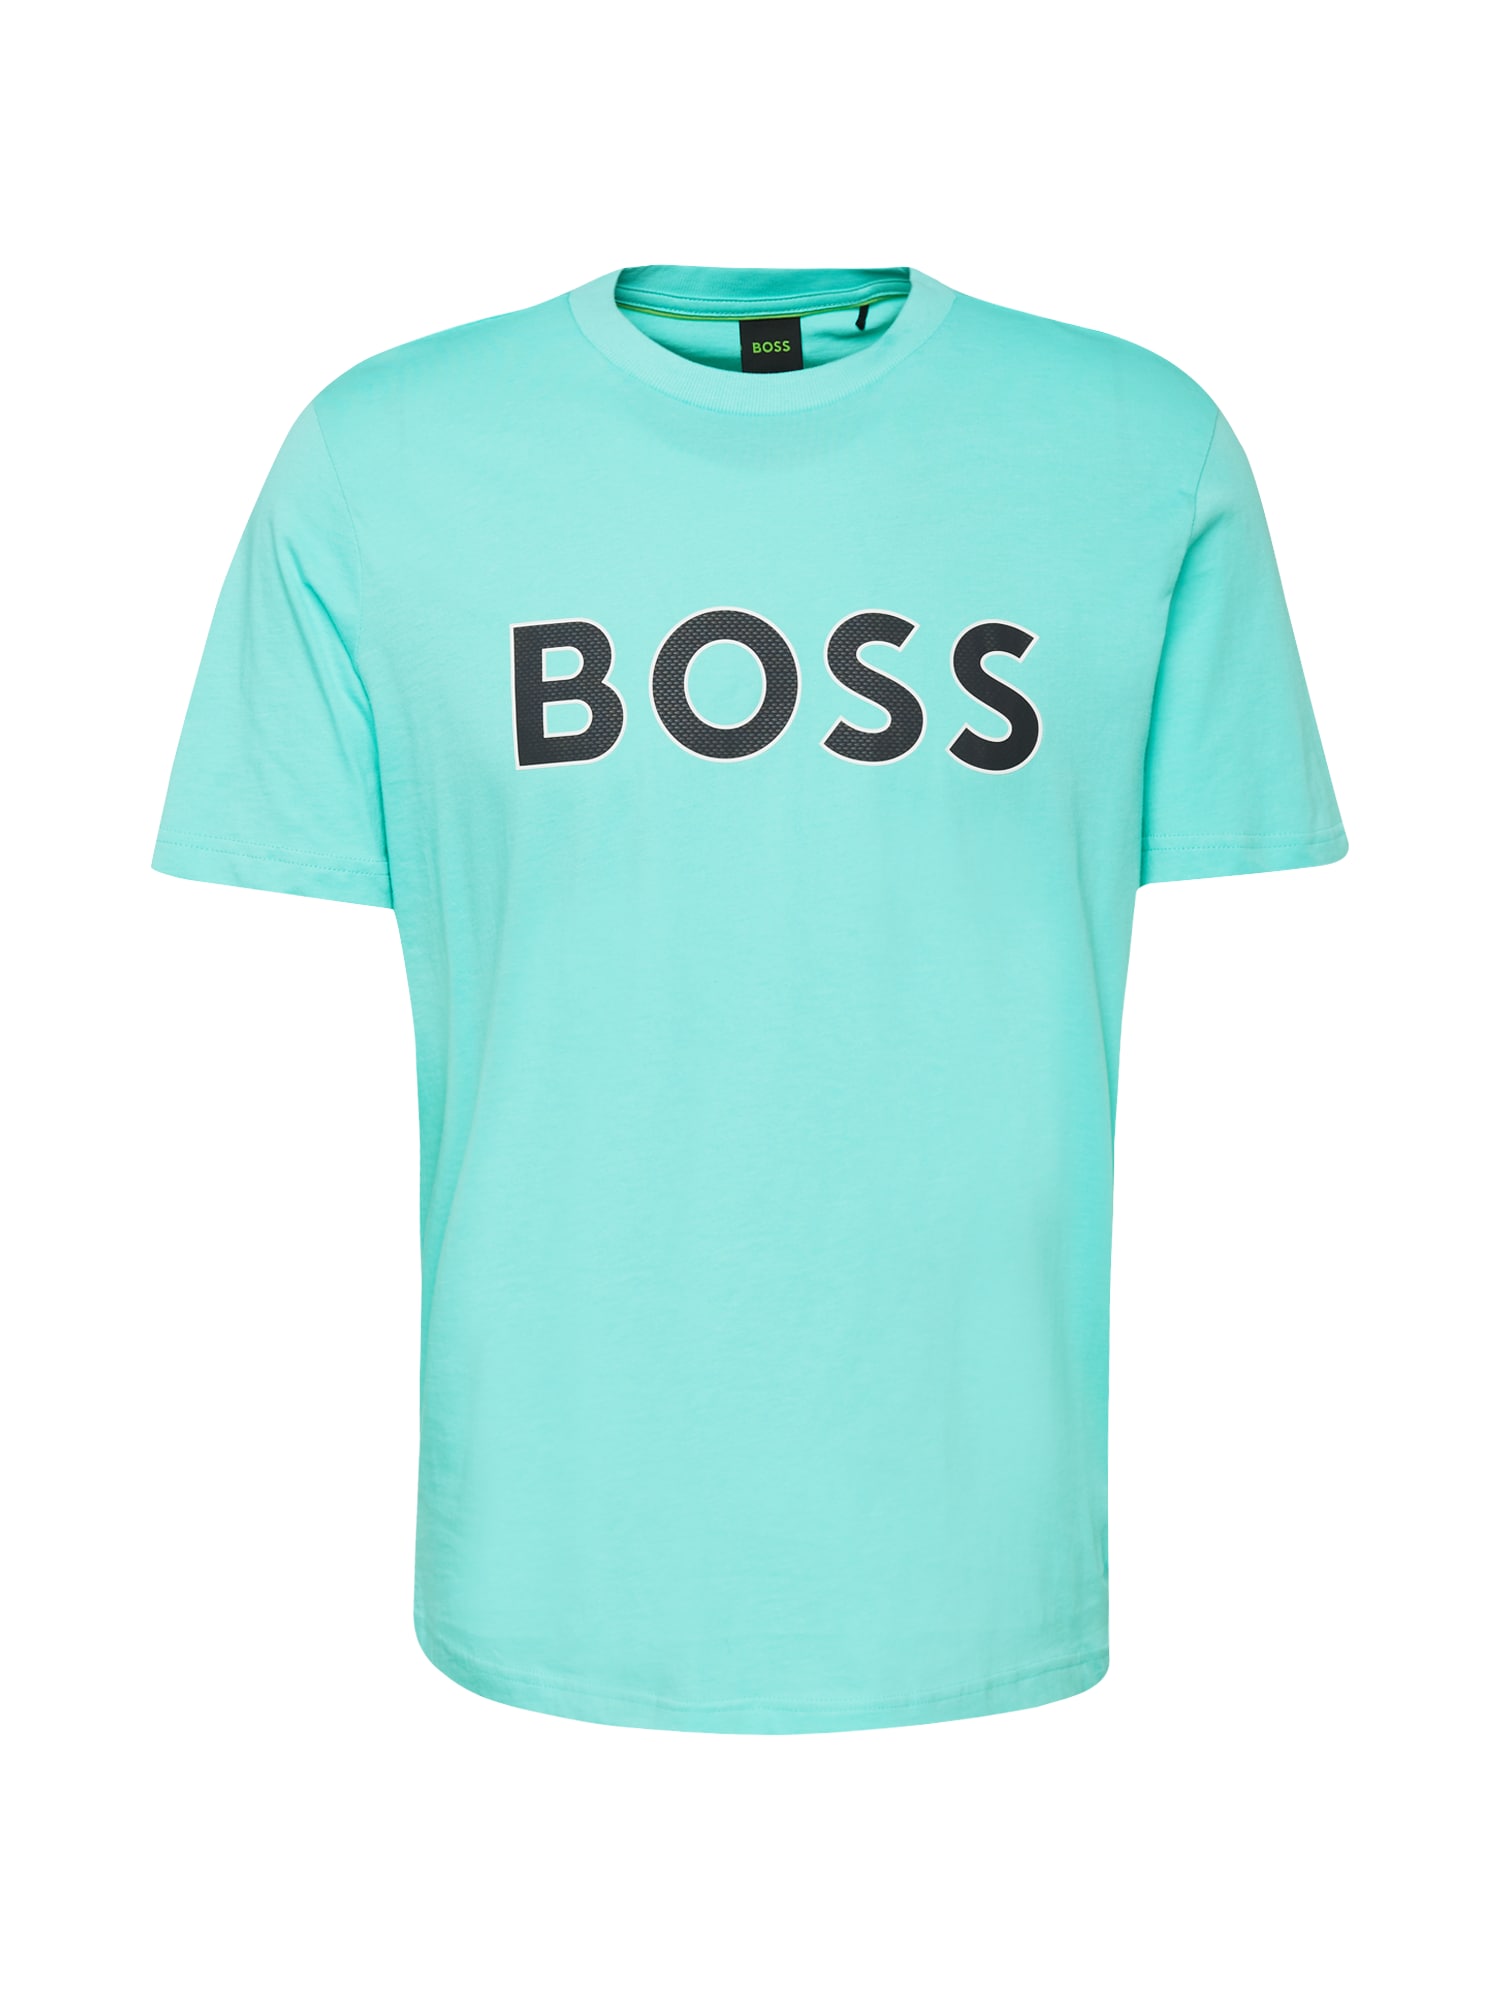 Tričko BOSS Green tyrkysová / černá / bílá